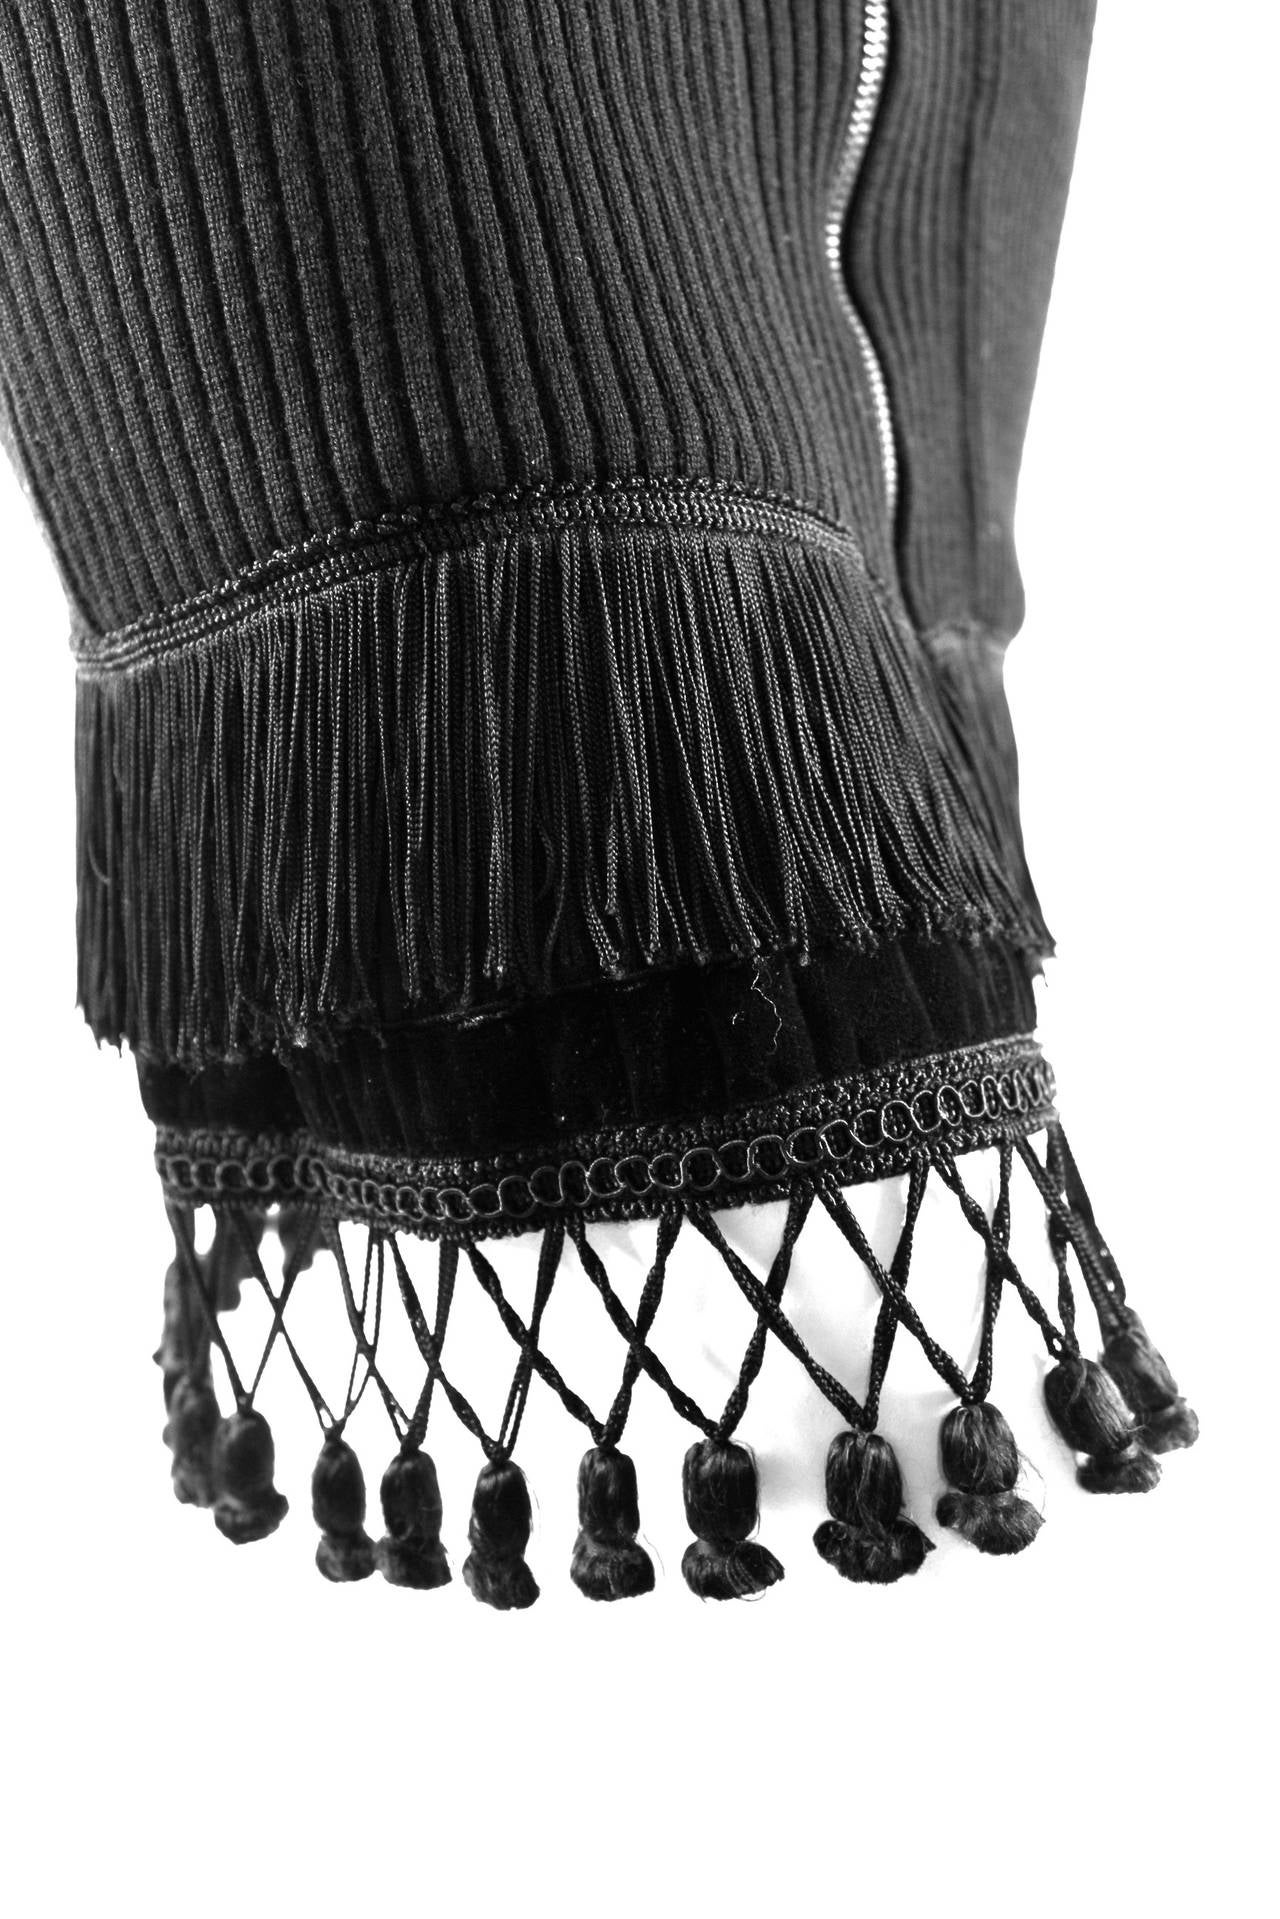 Jean Paul Gaultier for Equator Wool and Velvet fringe and Tassel Skirt 2